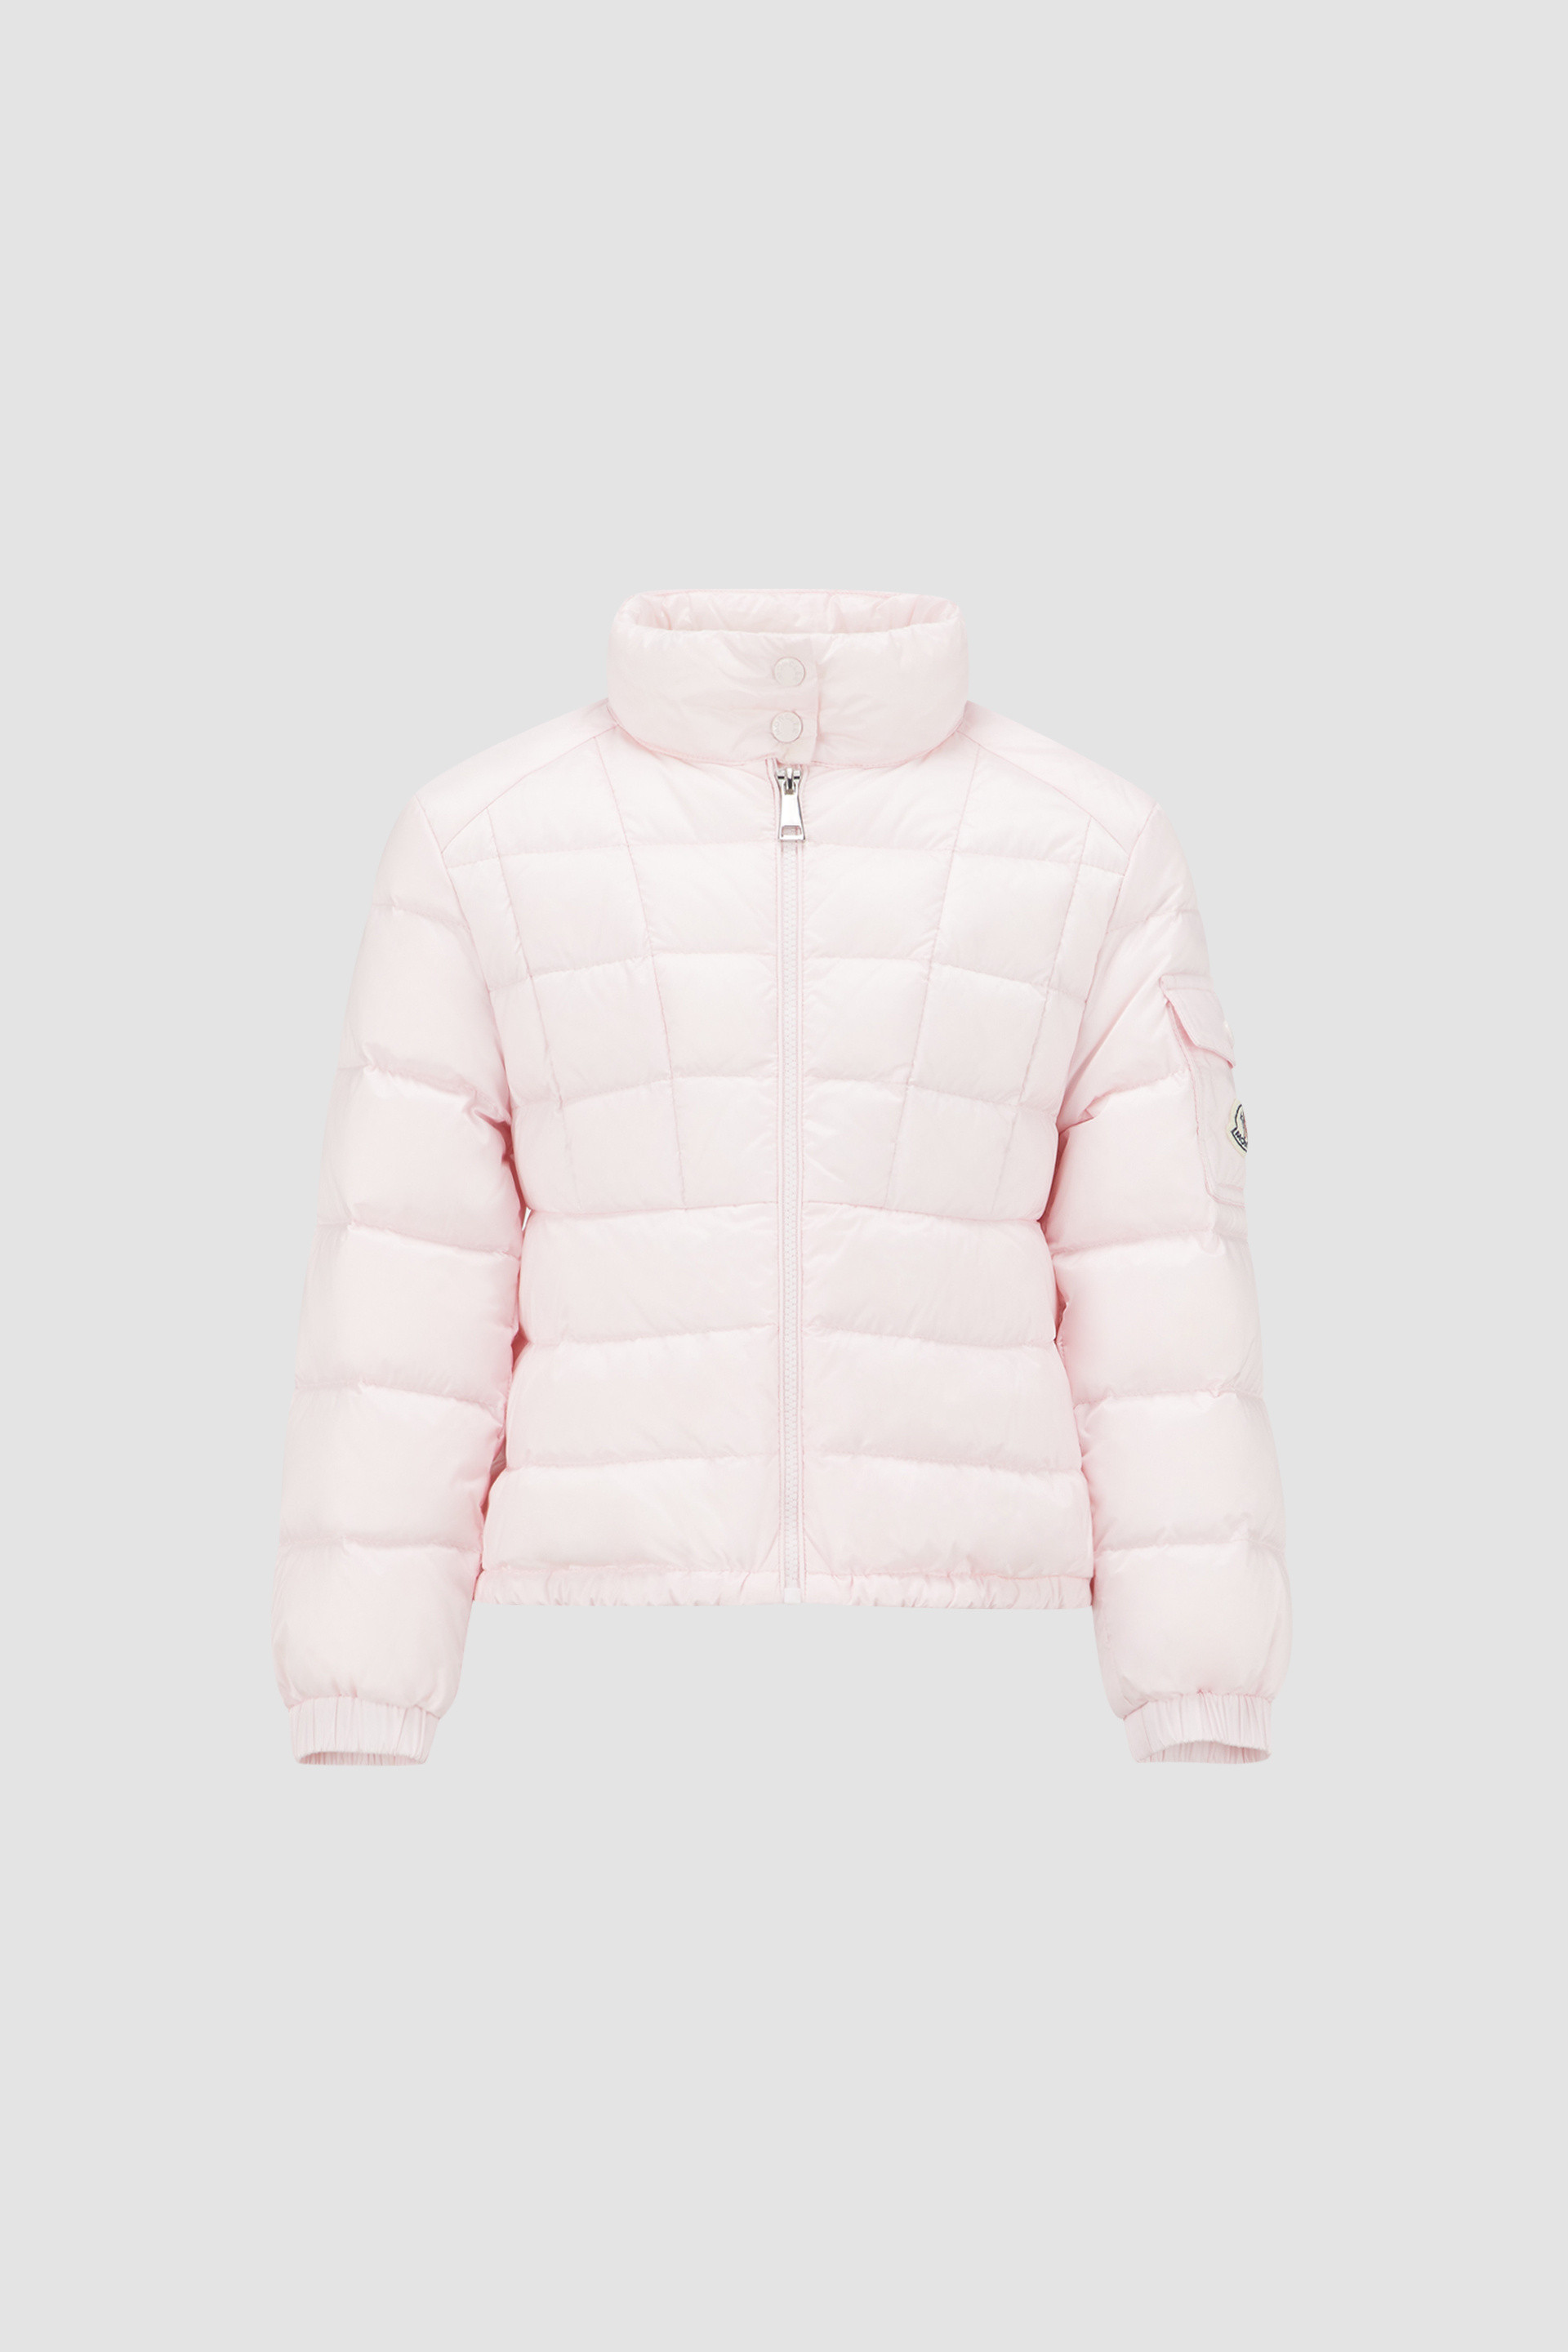 Kids Winter Jacket | Boy Winter Jacket | Girls Winter Jacket – Nino Bambino